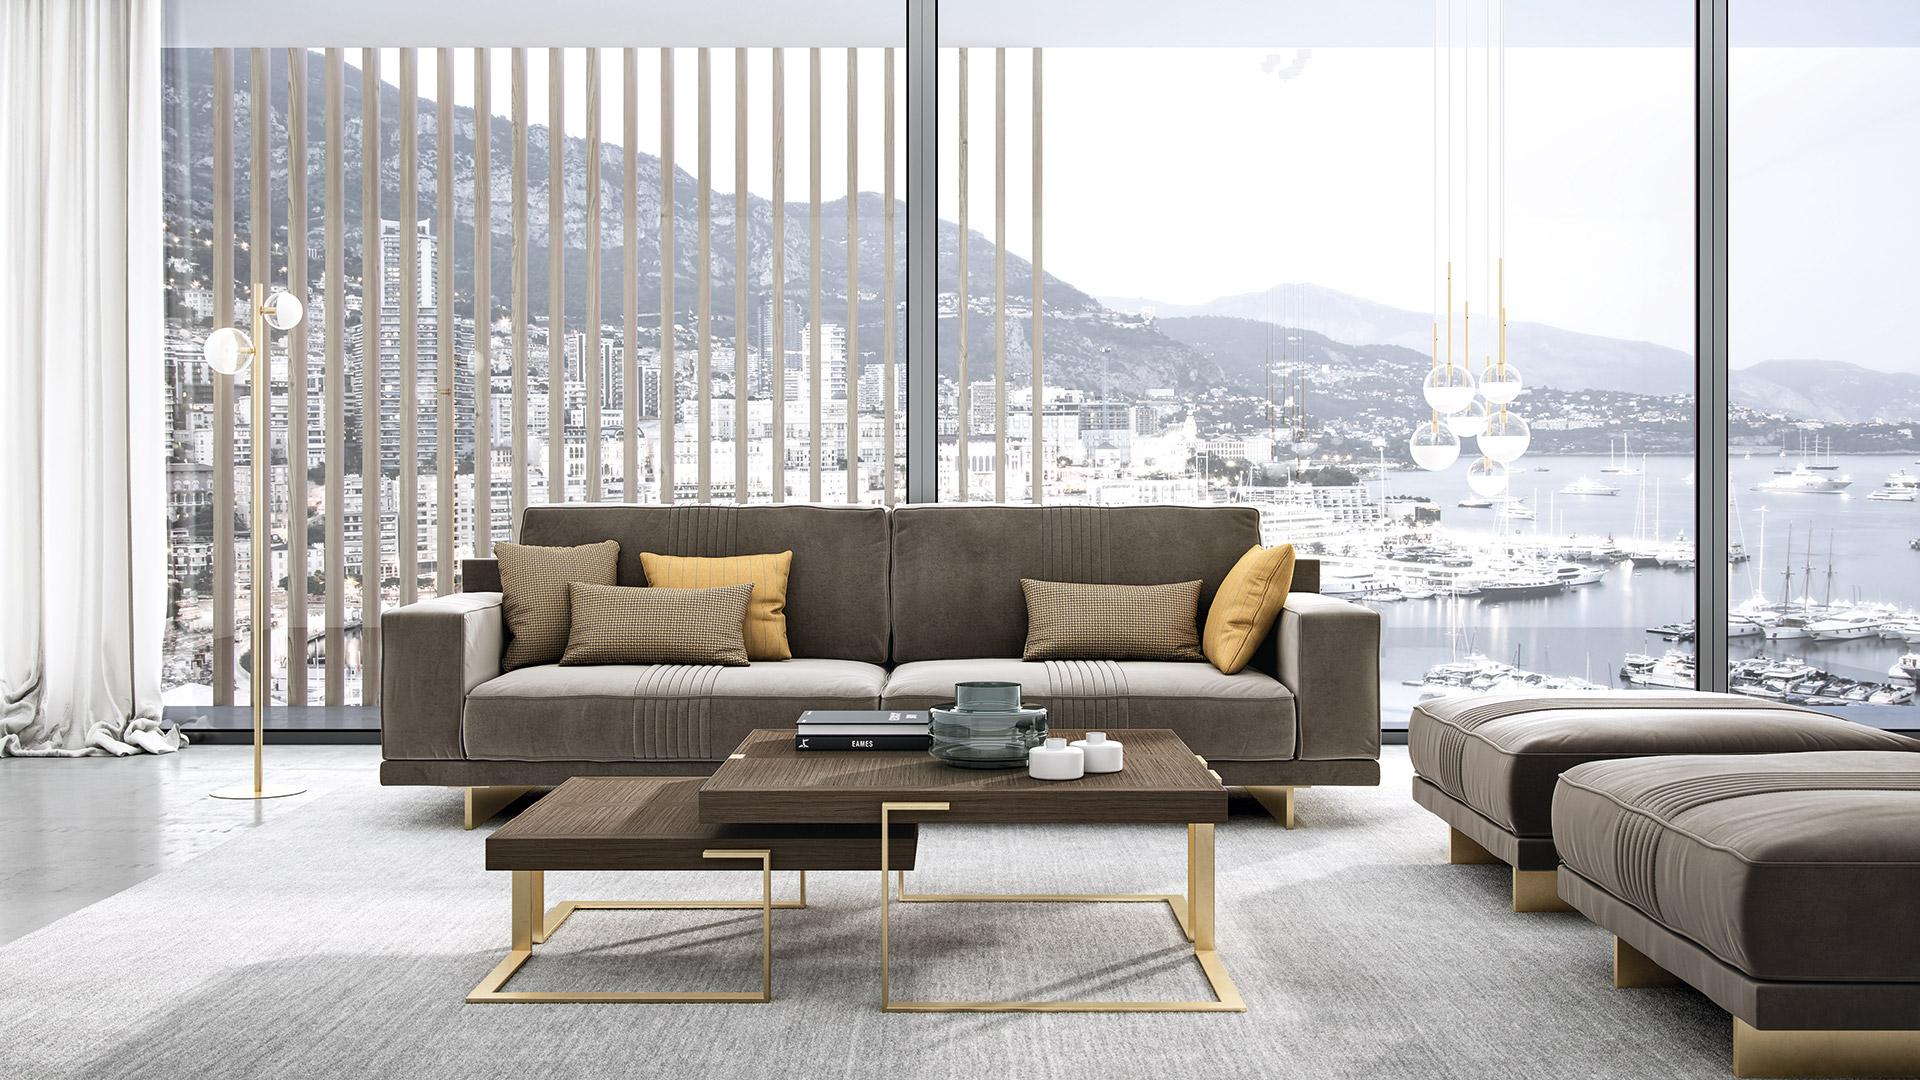 Das zweisitzige Sofa zeichnet sich durch eine weiche, perfekt geformte Rückenlehne aus, die den Komfort erhöht.
Der Metallfuß ist in Gold ausgeführt und unterstreicht den modernen Look des Sofas.
Auf der Rückseite und auf der Sitzfläche